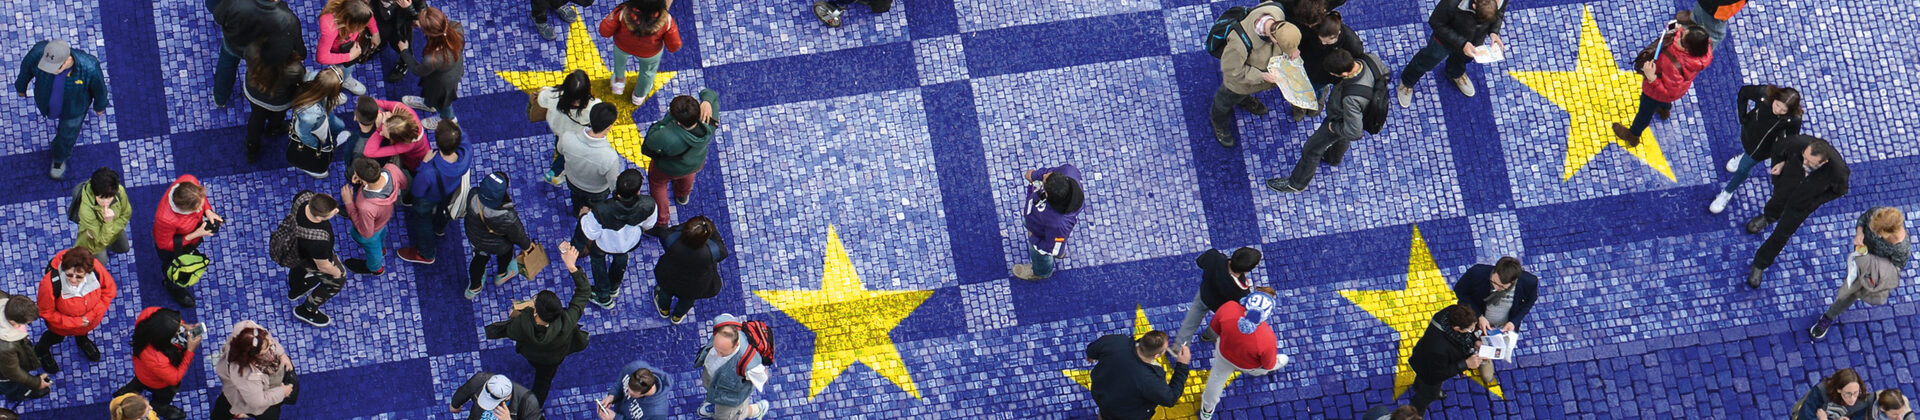 Vogelperspektive auf einen öffentlichen Platz, über den ganz viele Menschen laufen. Der Platz ist im Blau der europäischen Union eingefärbt und darauf sind gelbe Sterne zu sehen.